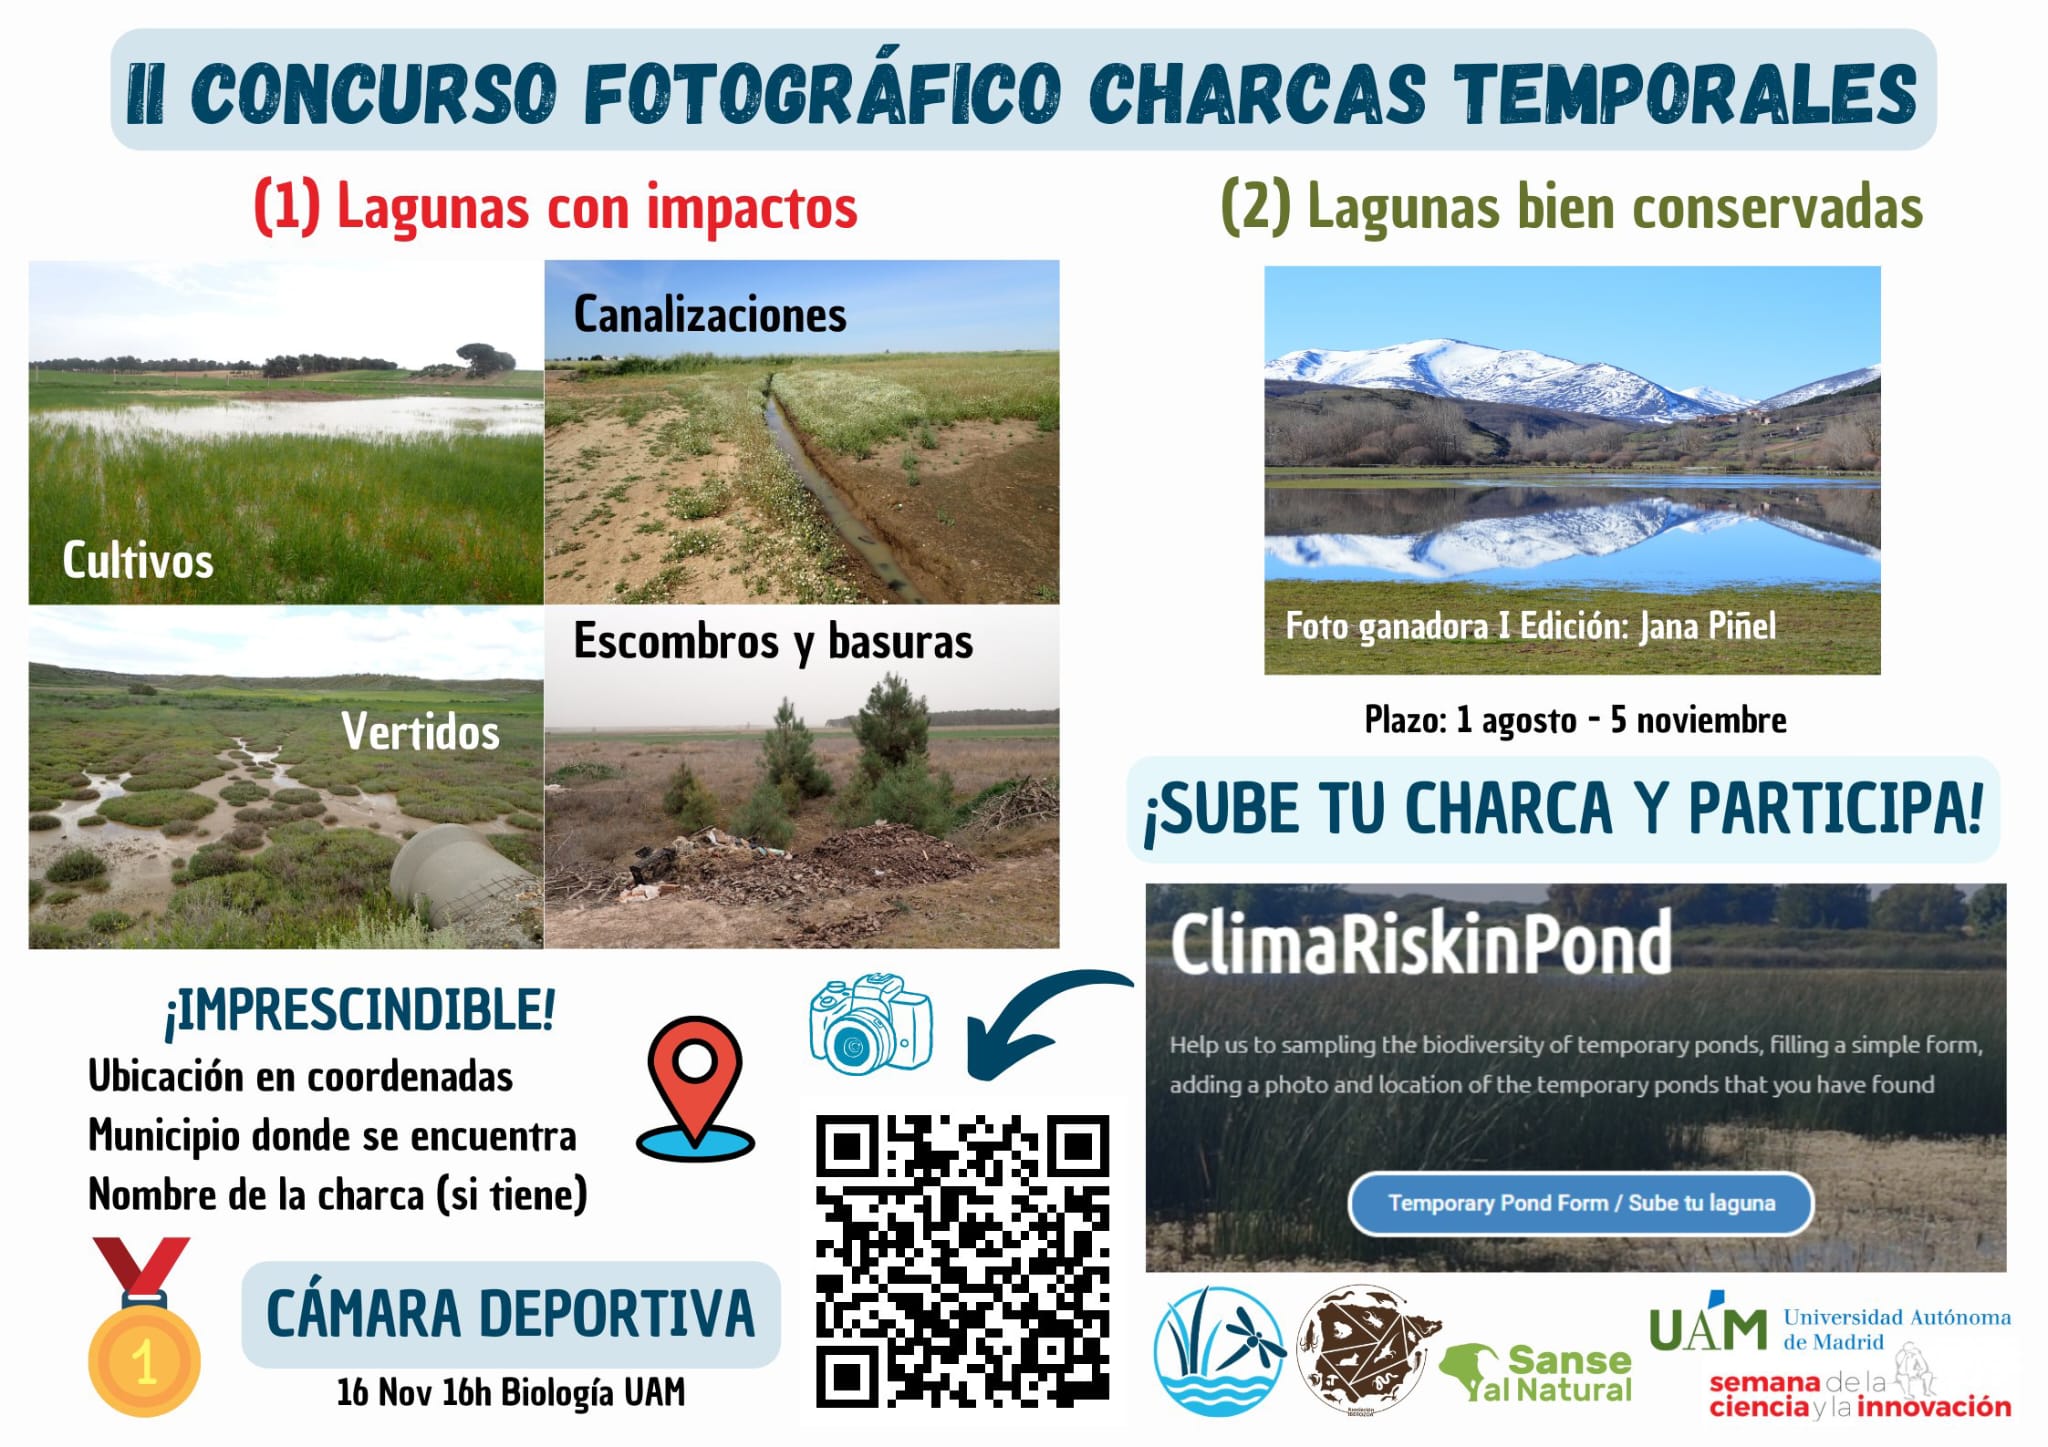 Segunda edición del concurso fotográfico de lagunas temporales del proyecto ClimaRiskinPond, donde podremos conocer la conservación y las amenazas de estos ecosistemas tan particulares en nuestro país.